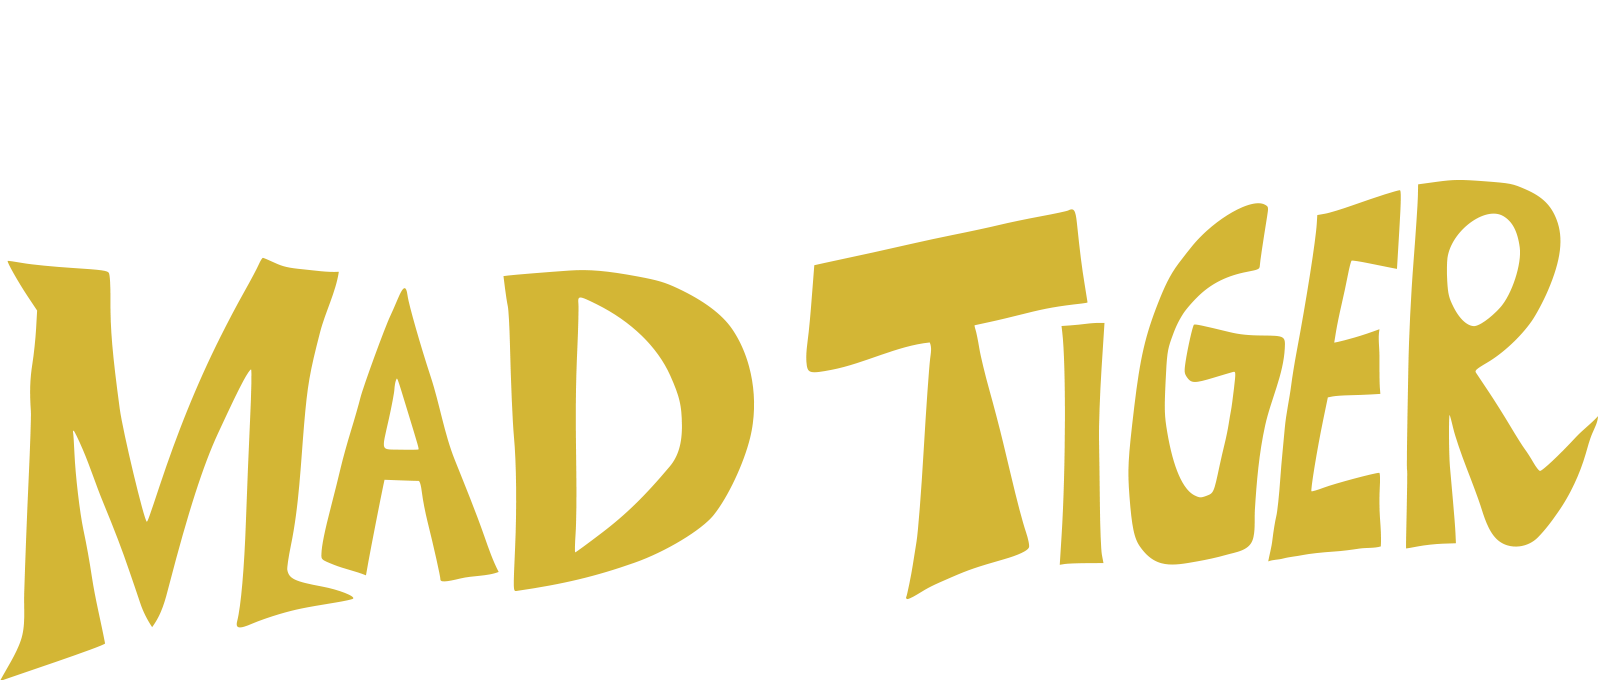 MAD TIGER